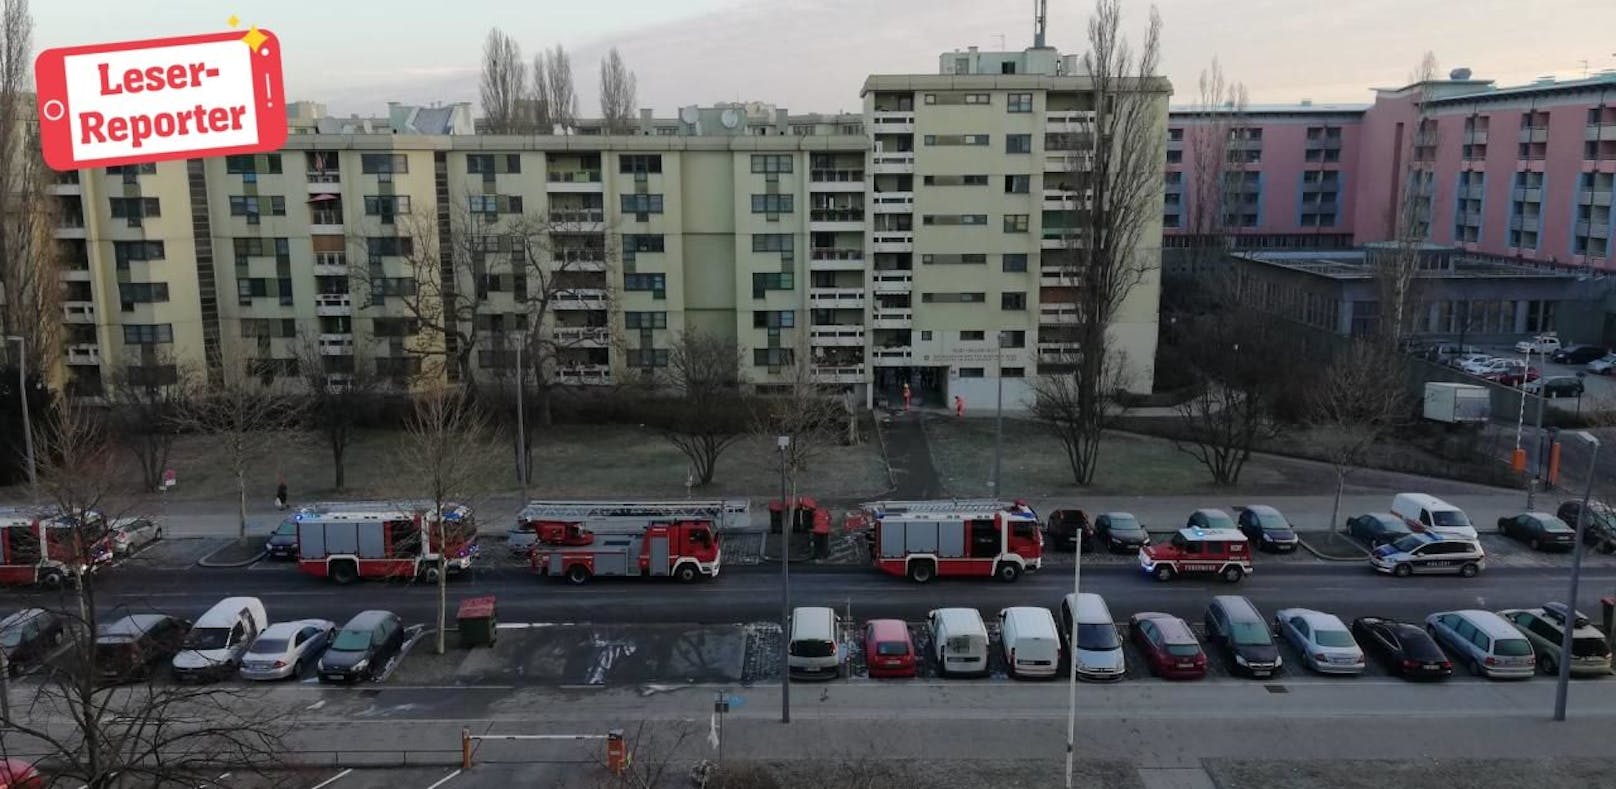 Feuerwehr-Einsatz in Leopoldstadt